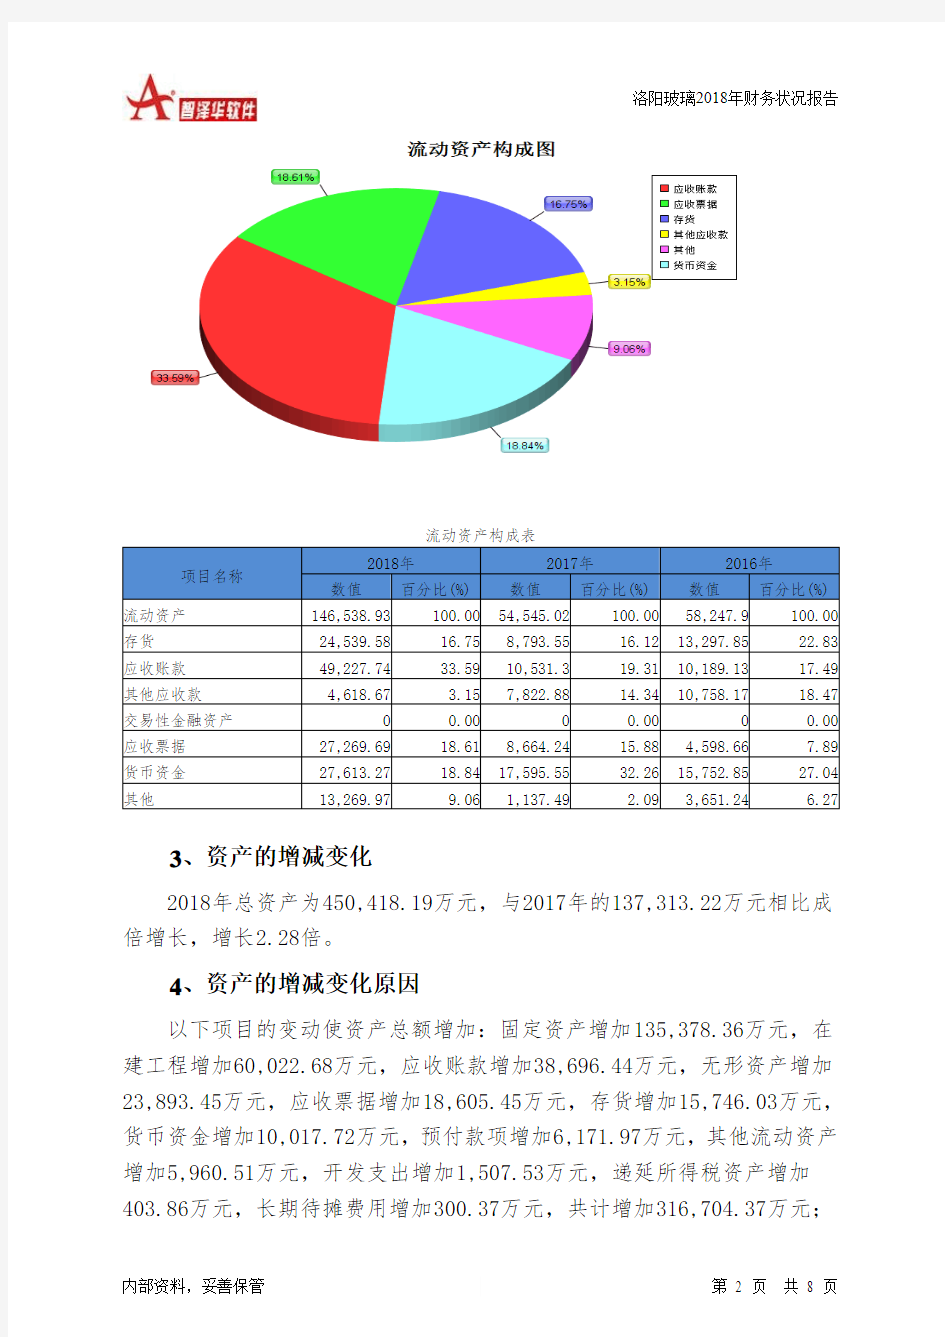 洛阳玻璃2018年财务状况报告-智泽华